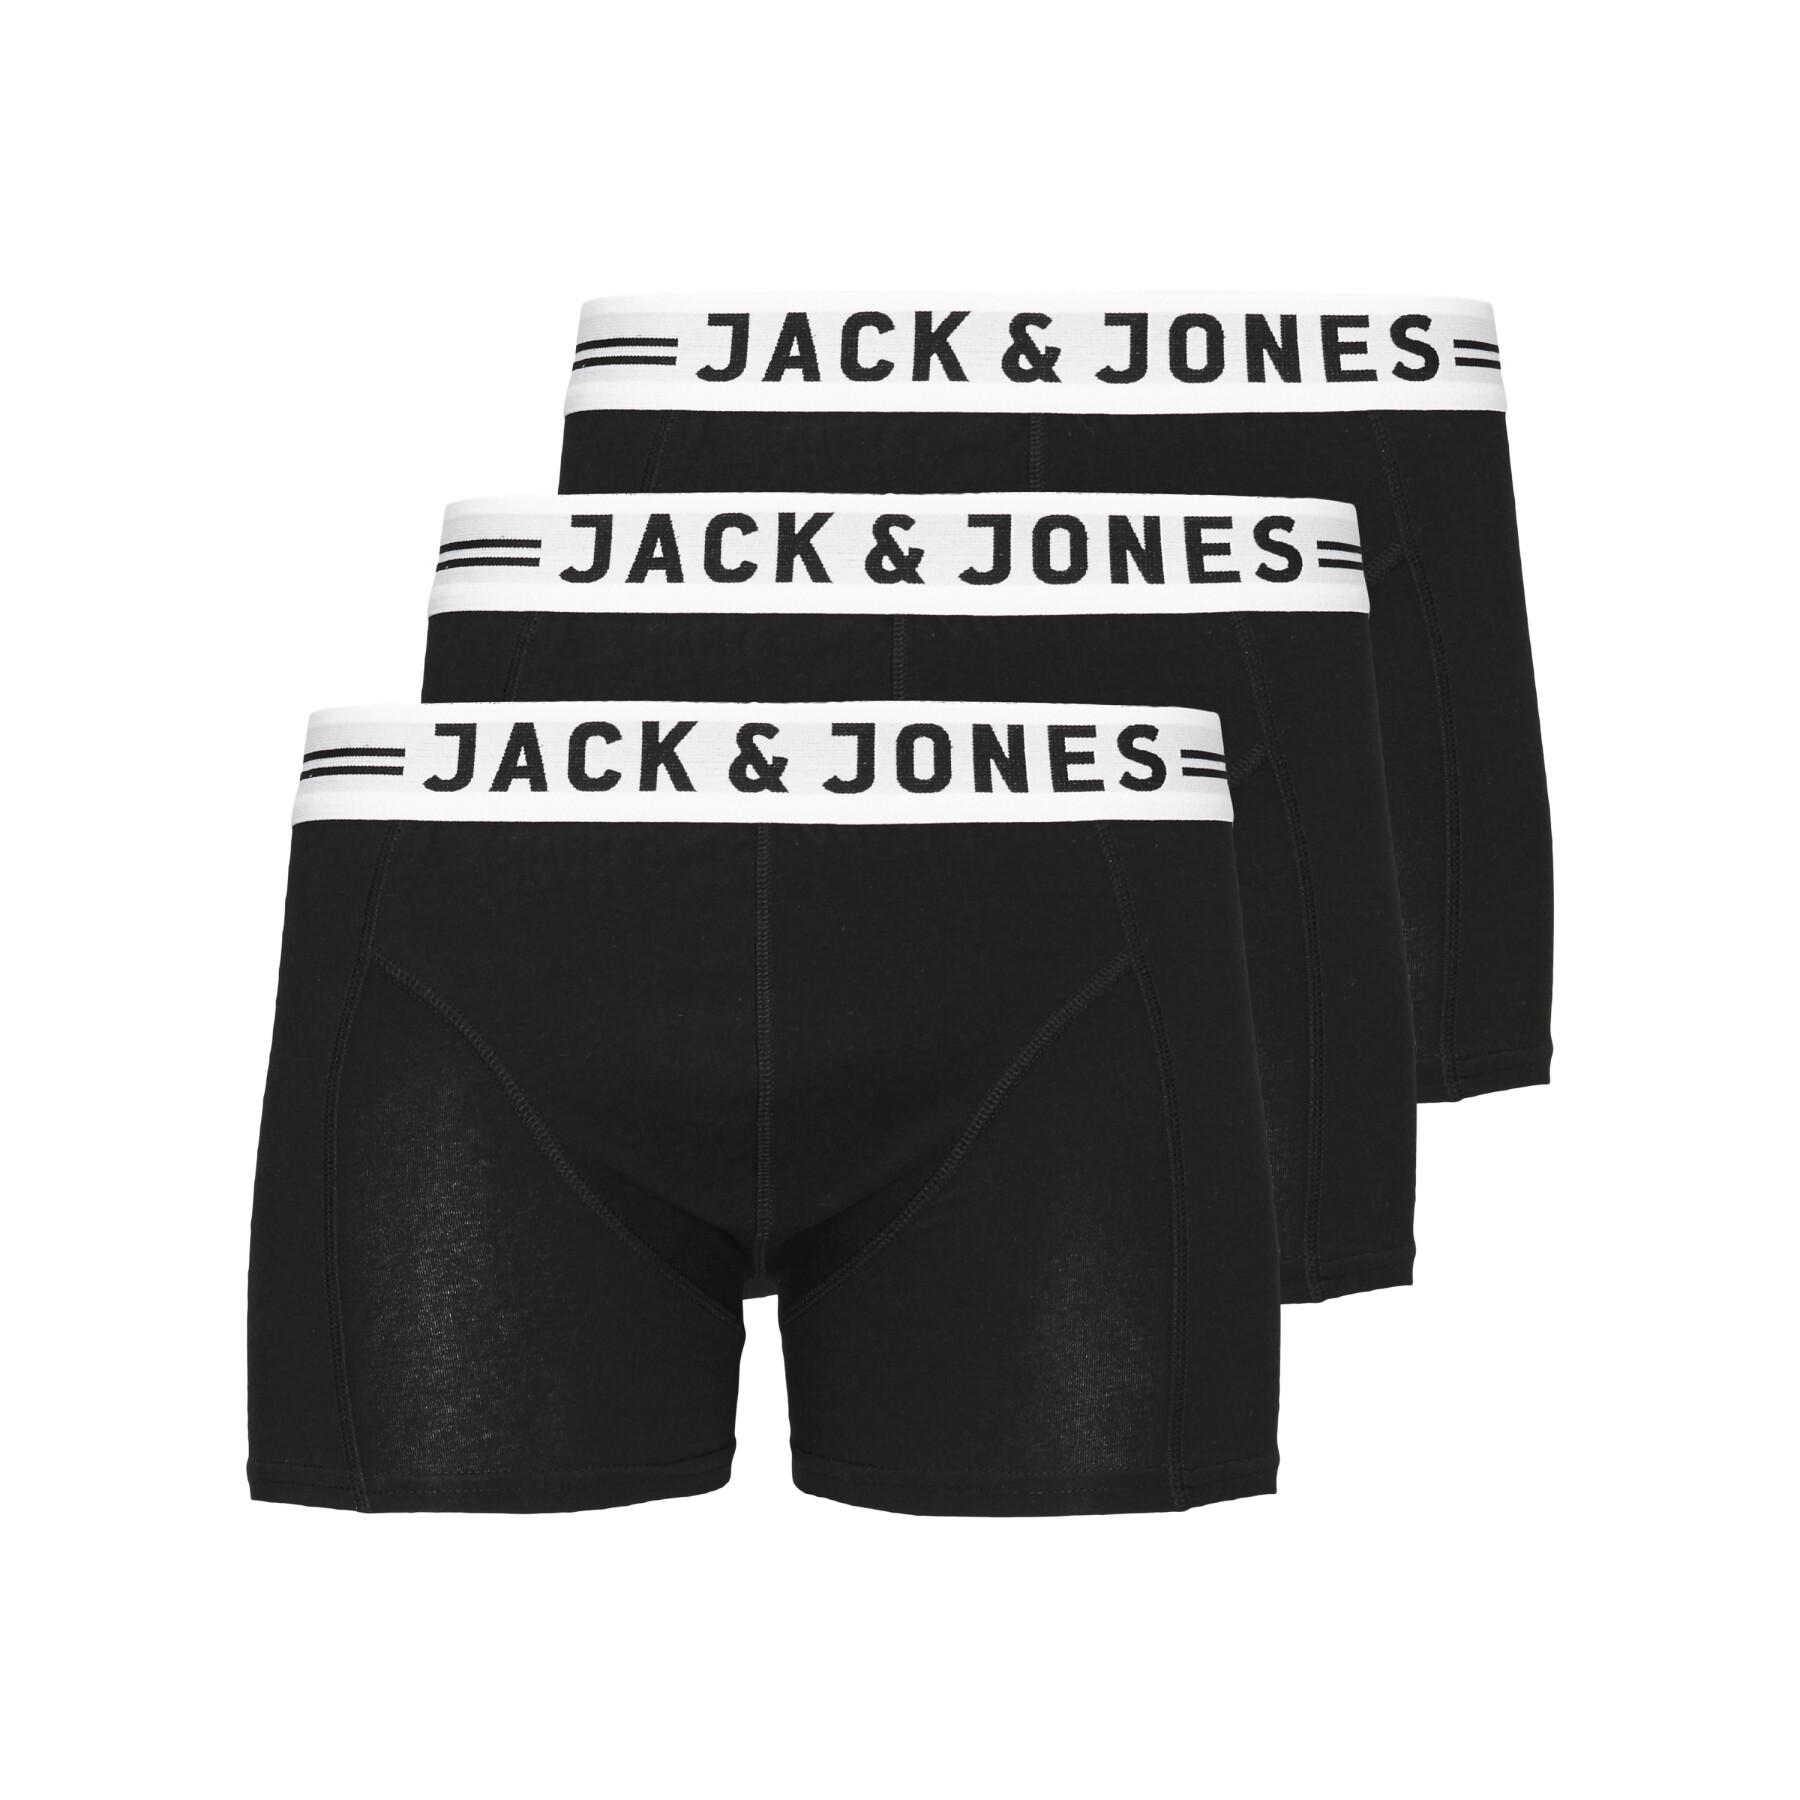 Paquete de 3 boxers Jack & Jones